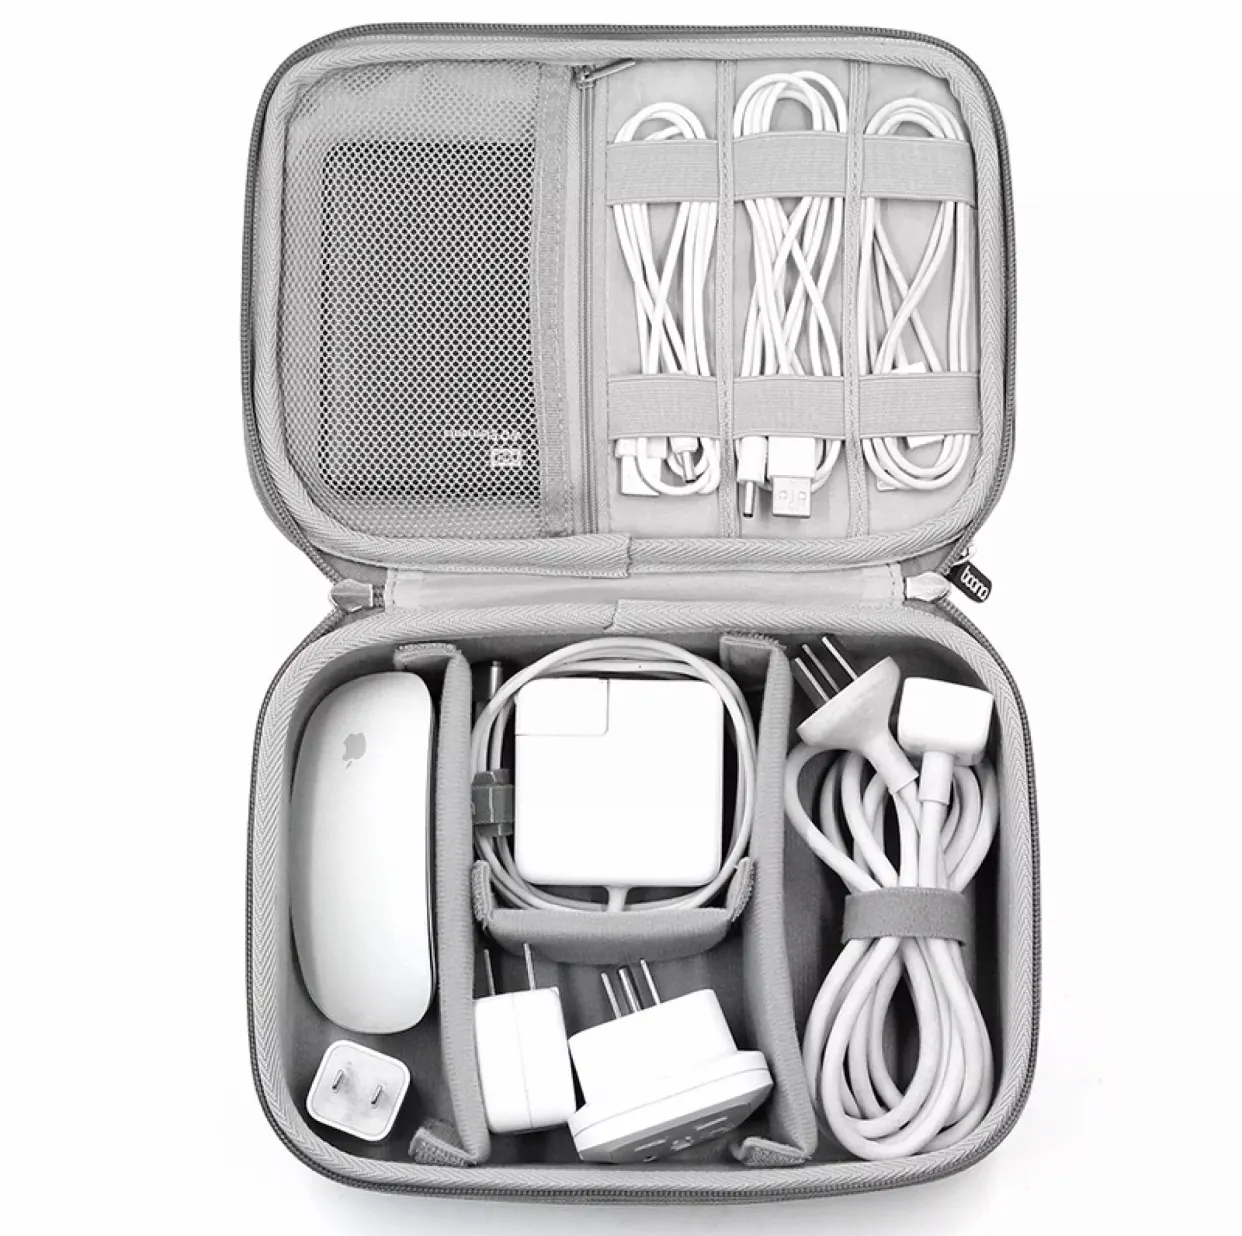 מותאם אישית עמיד למים קליפה קשה EVA אלקטרוני ארגונית מקרה עבור iPad אוזניות מטען כבלים אלקטרוני אביזרי נסיעות מקרה